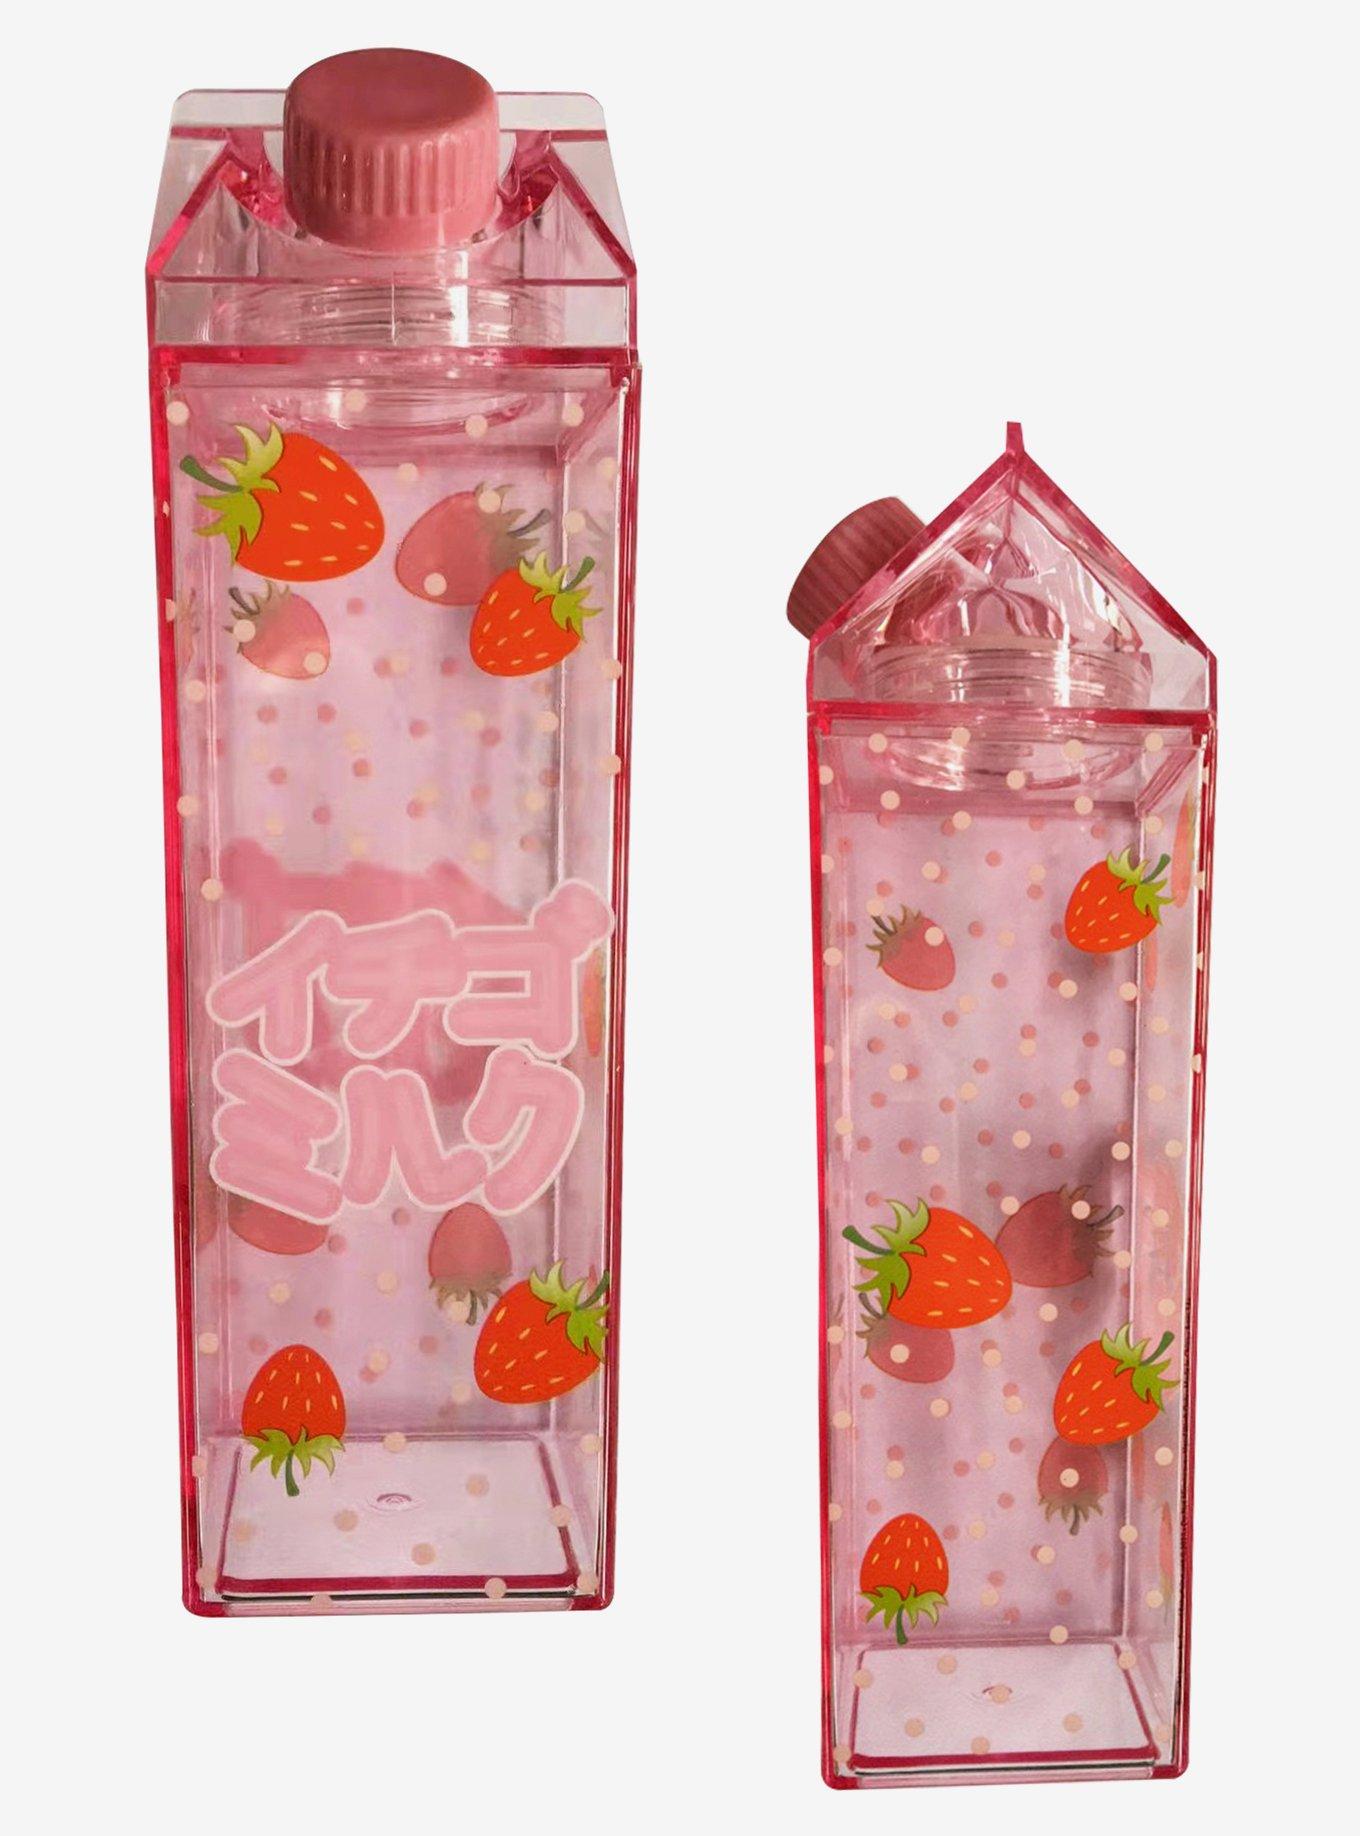 Hibiscus Milk Carton Water Bottle